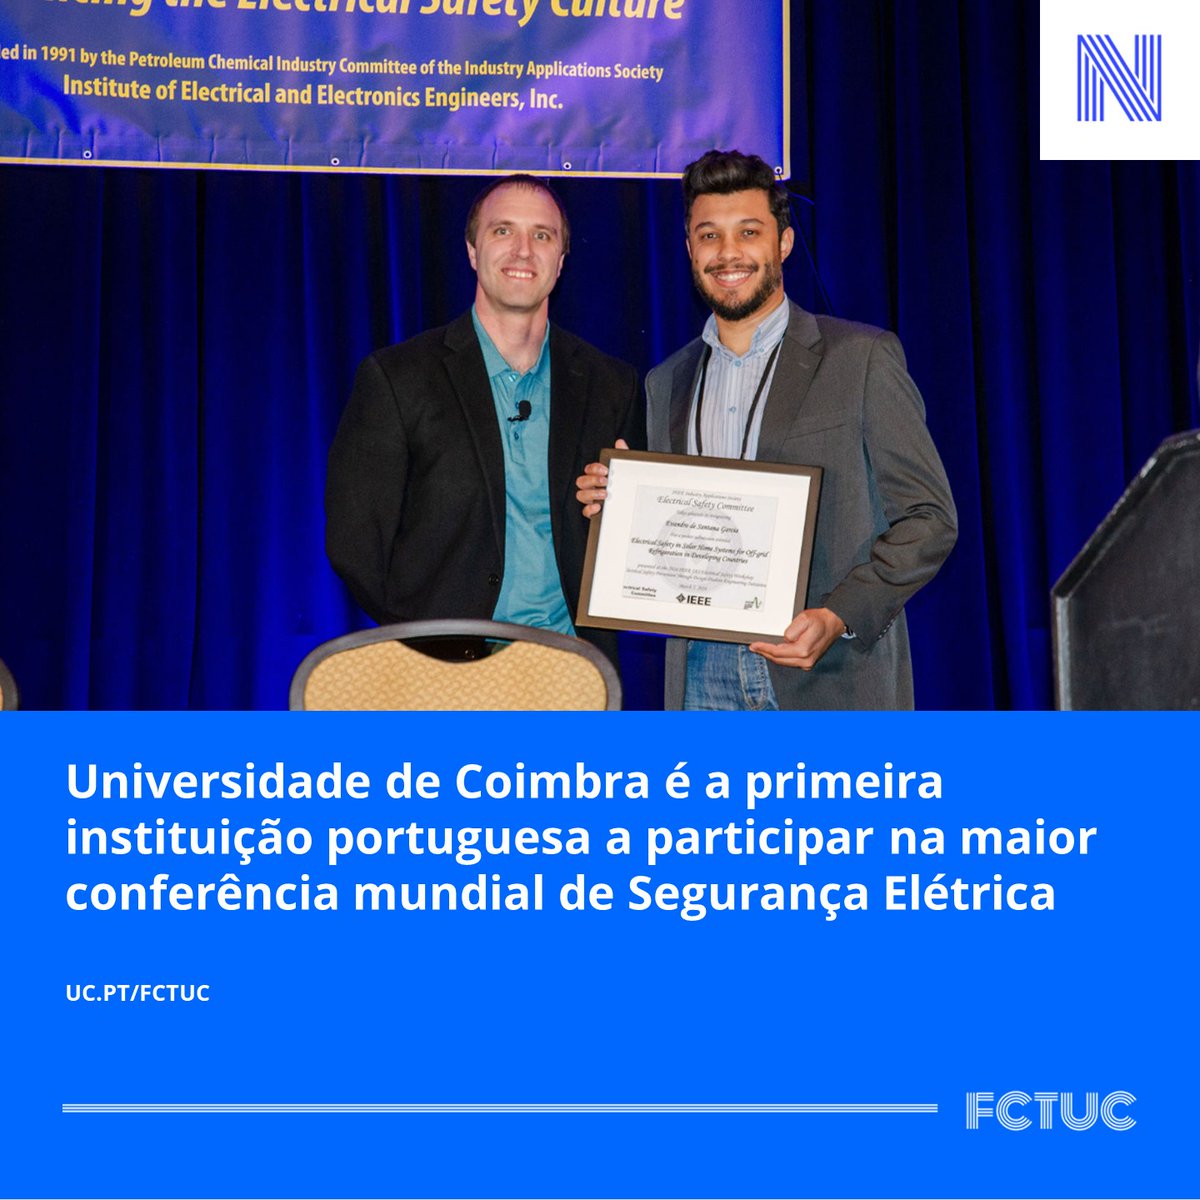 Universidade de Coimbra é a primeira instituição portuguesa a participar na maior conferência mundial de Segurança Elétrica. Saiba mais aqui: uc.pt/fctuc/noticias…